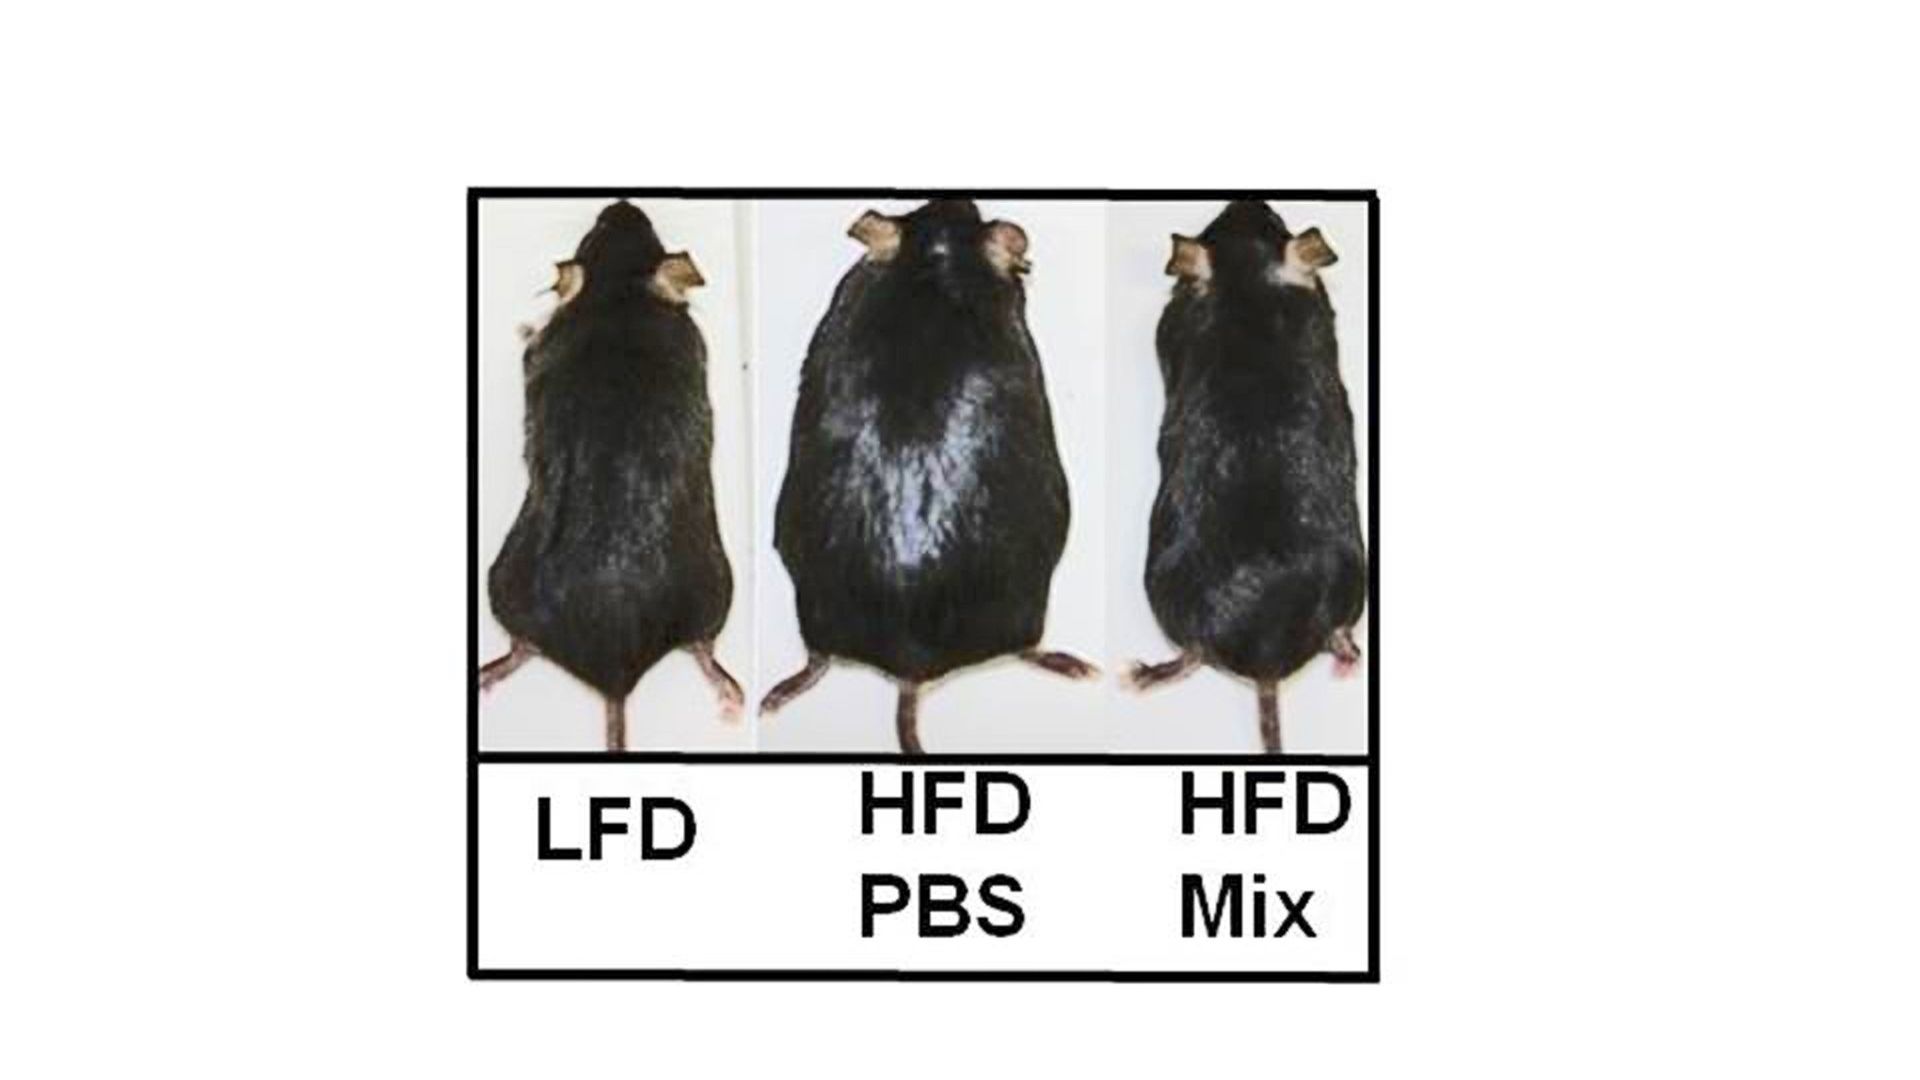 A gauche, une souris nourrie normalement; au milieu, une souris gavée avec des aliments très riches; à droite, une souris gavée également mais recevant le probiotique.